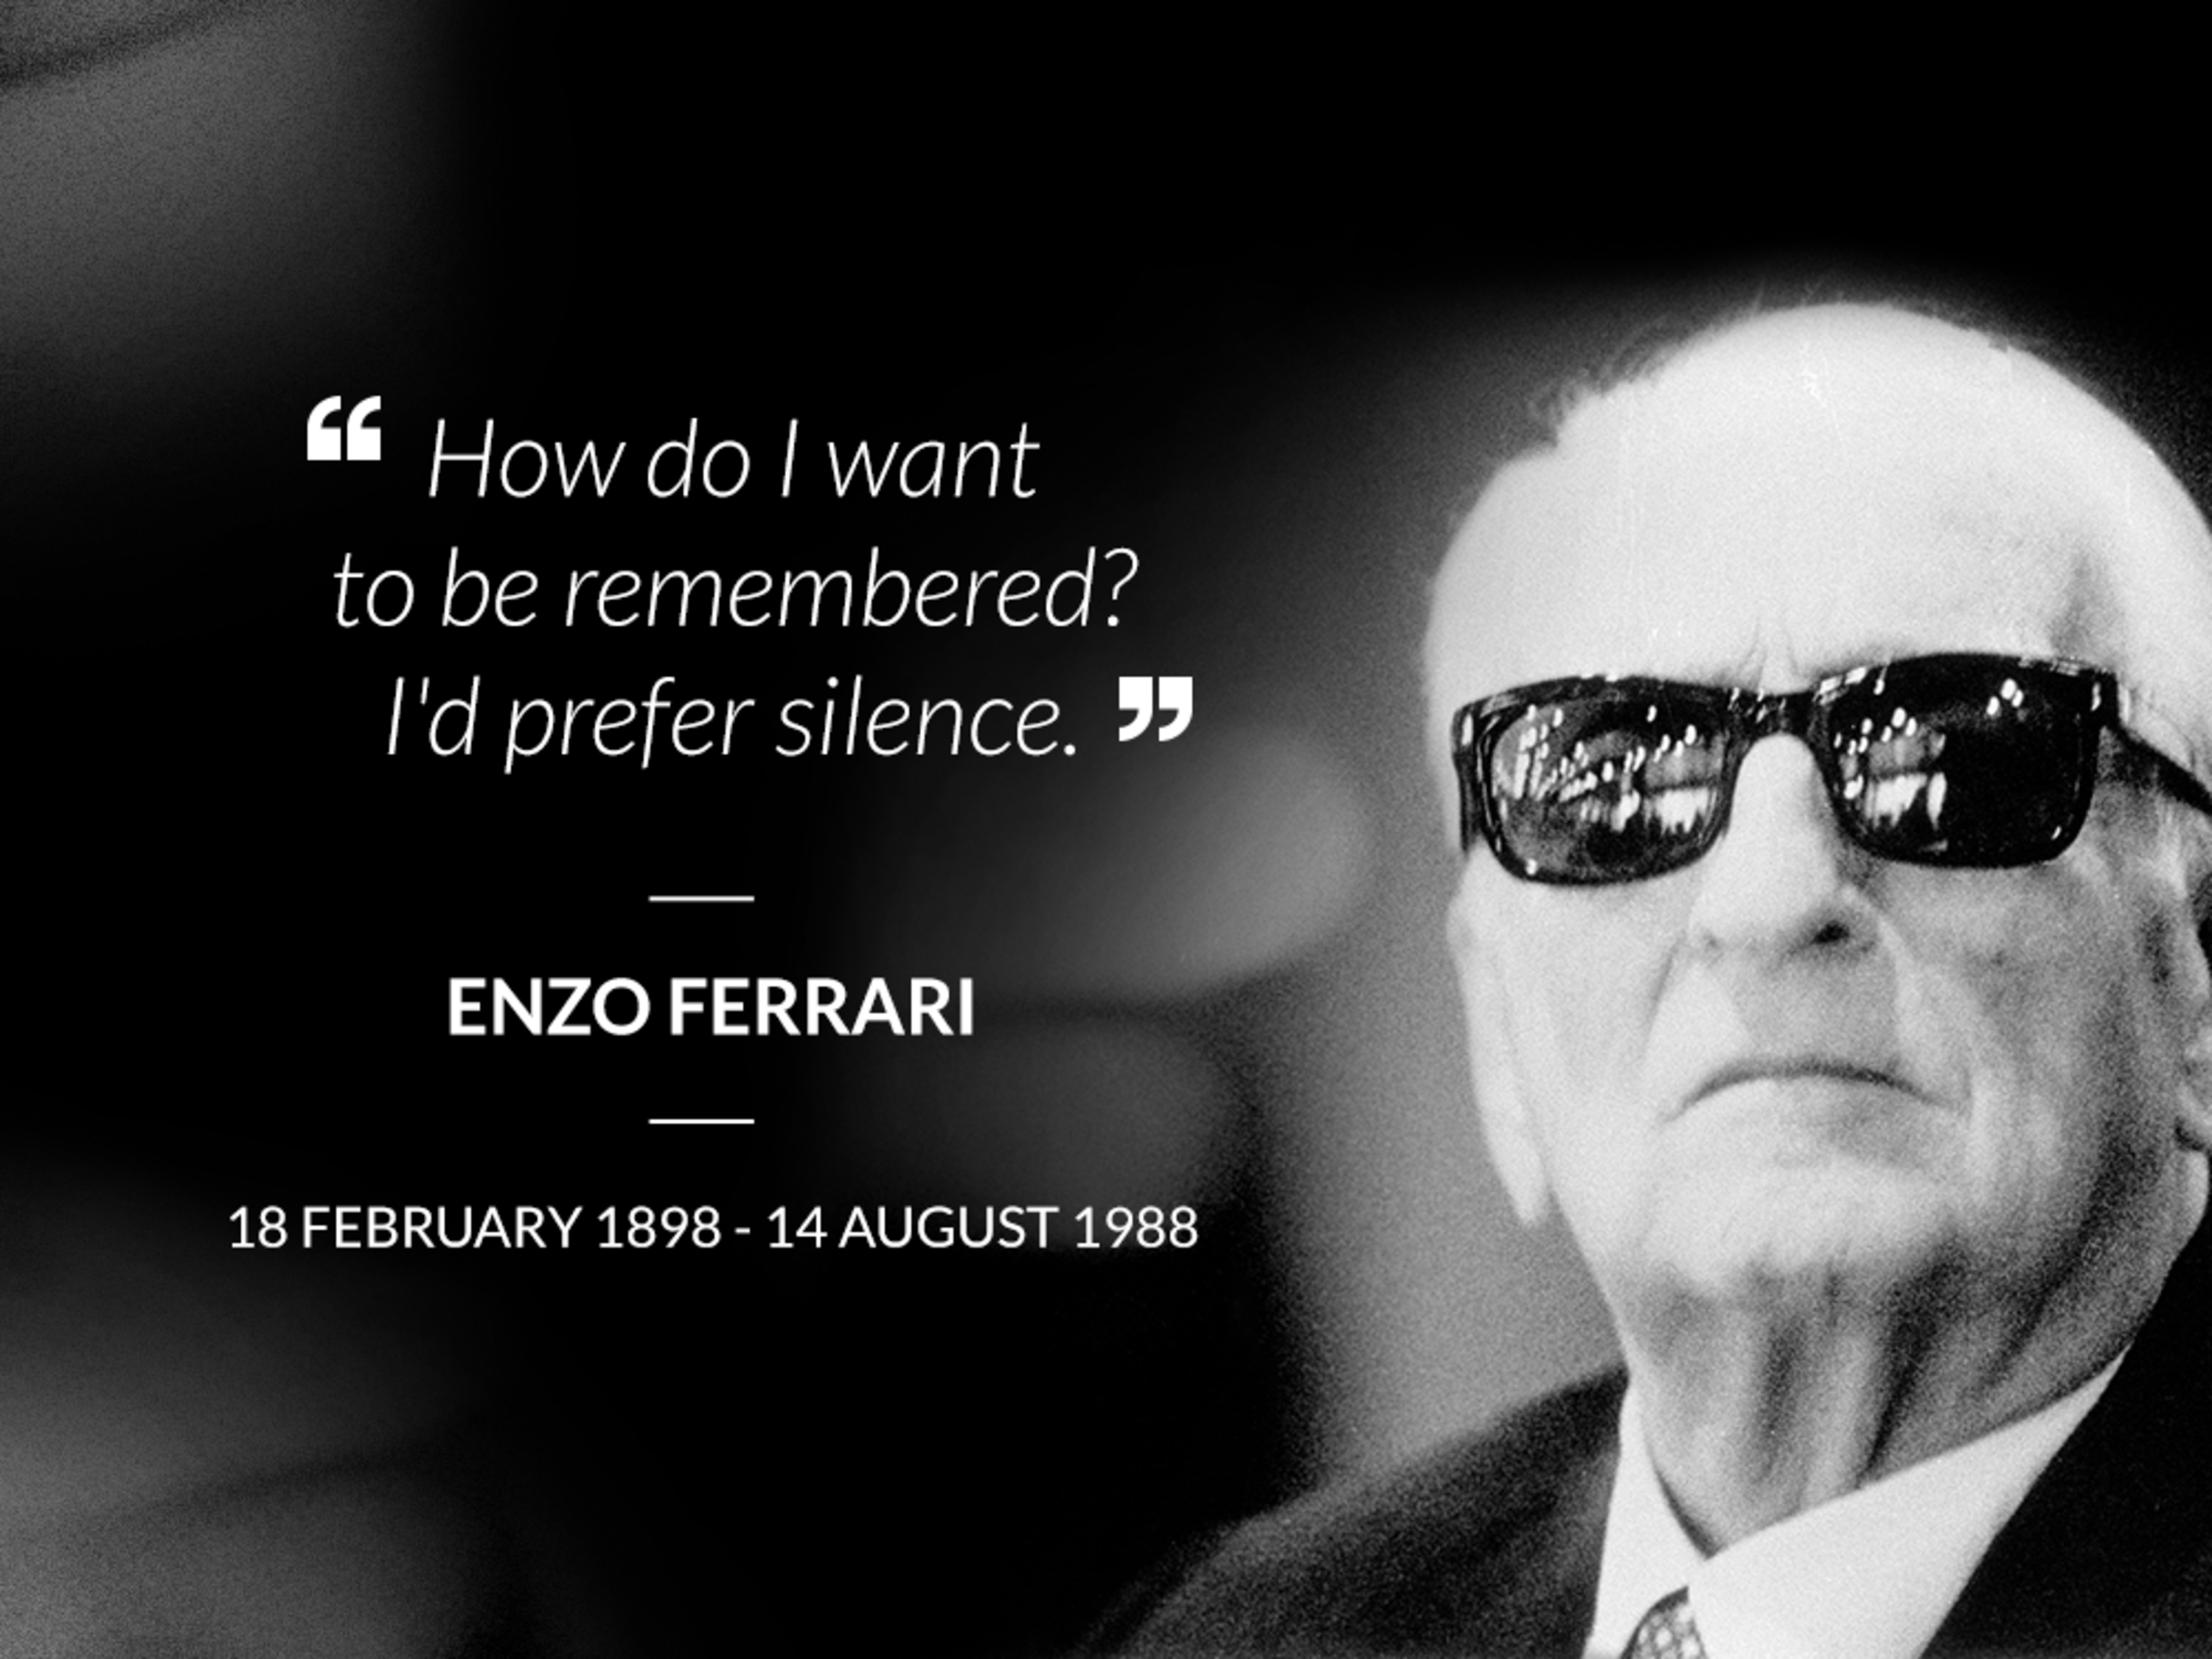 Enzo Ferrari, il ricordo a 30 anni dalla scomparsa